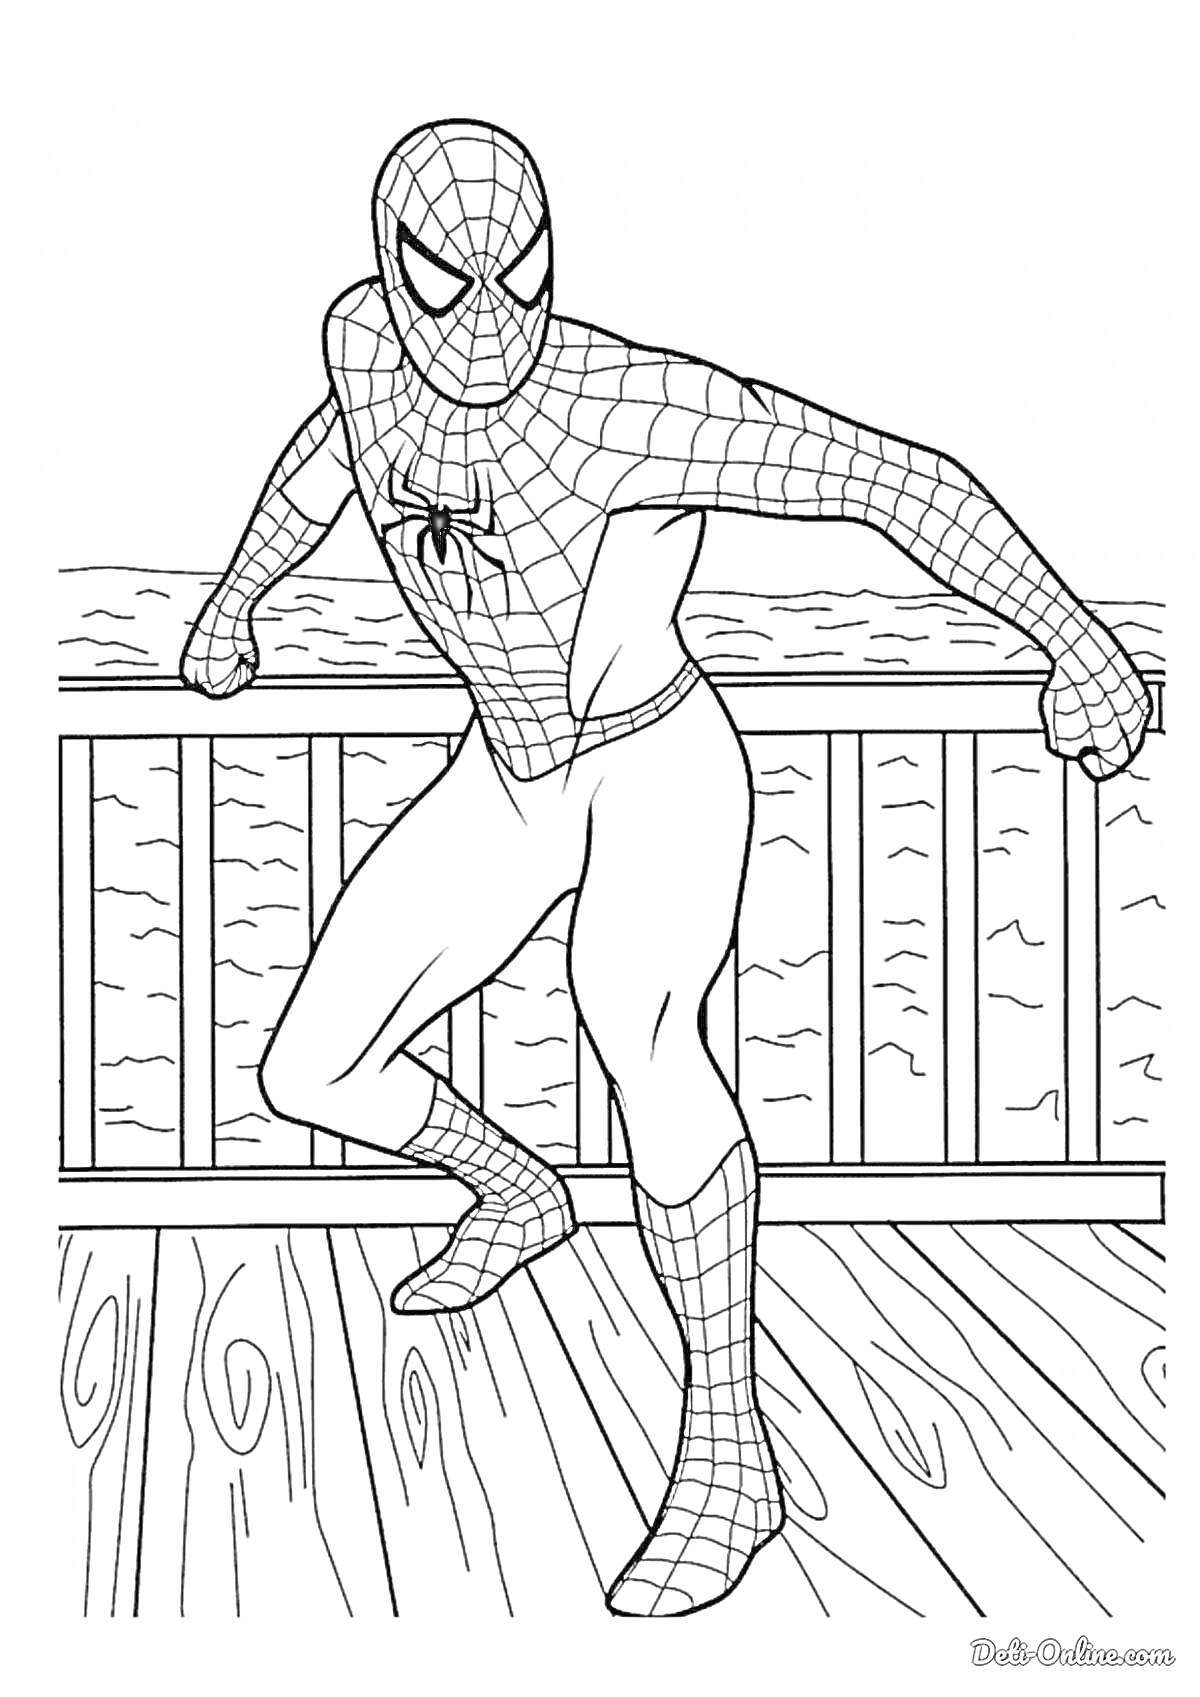 Раскраска Человек-паук на палубе причала